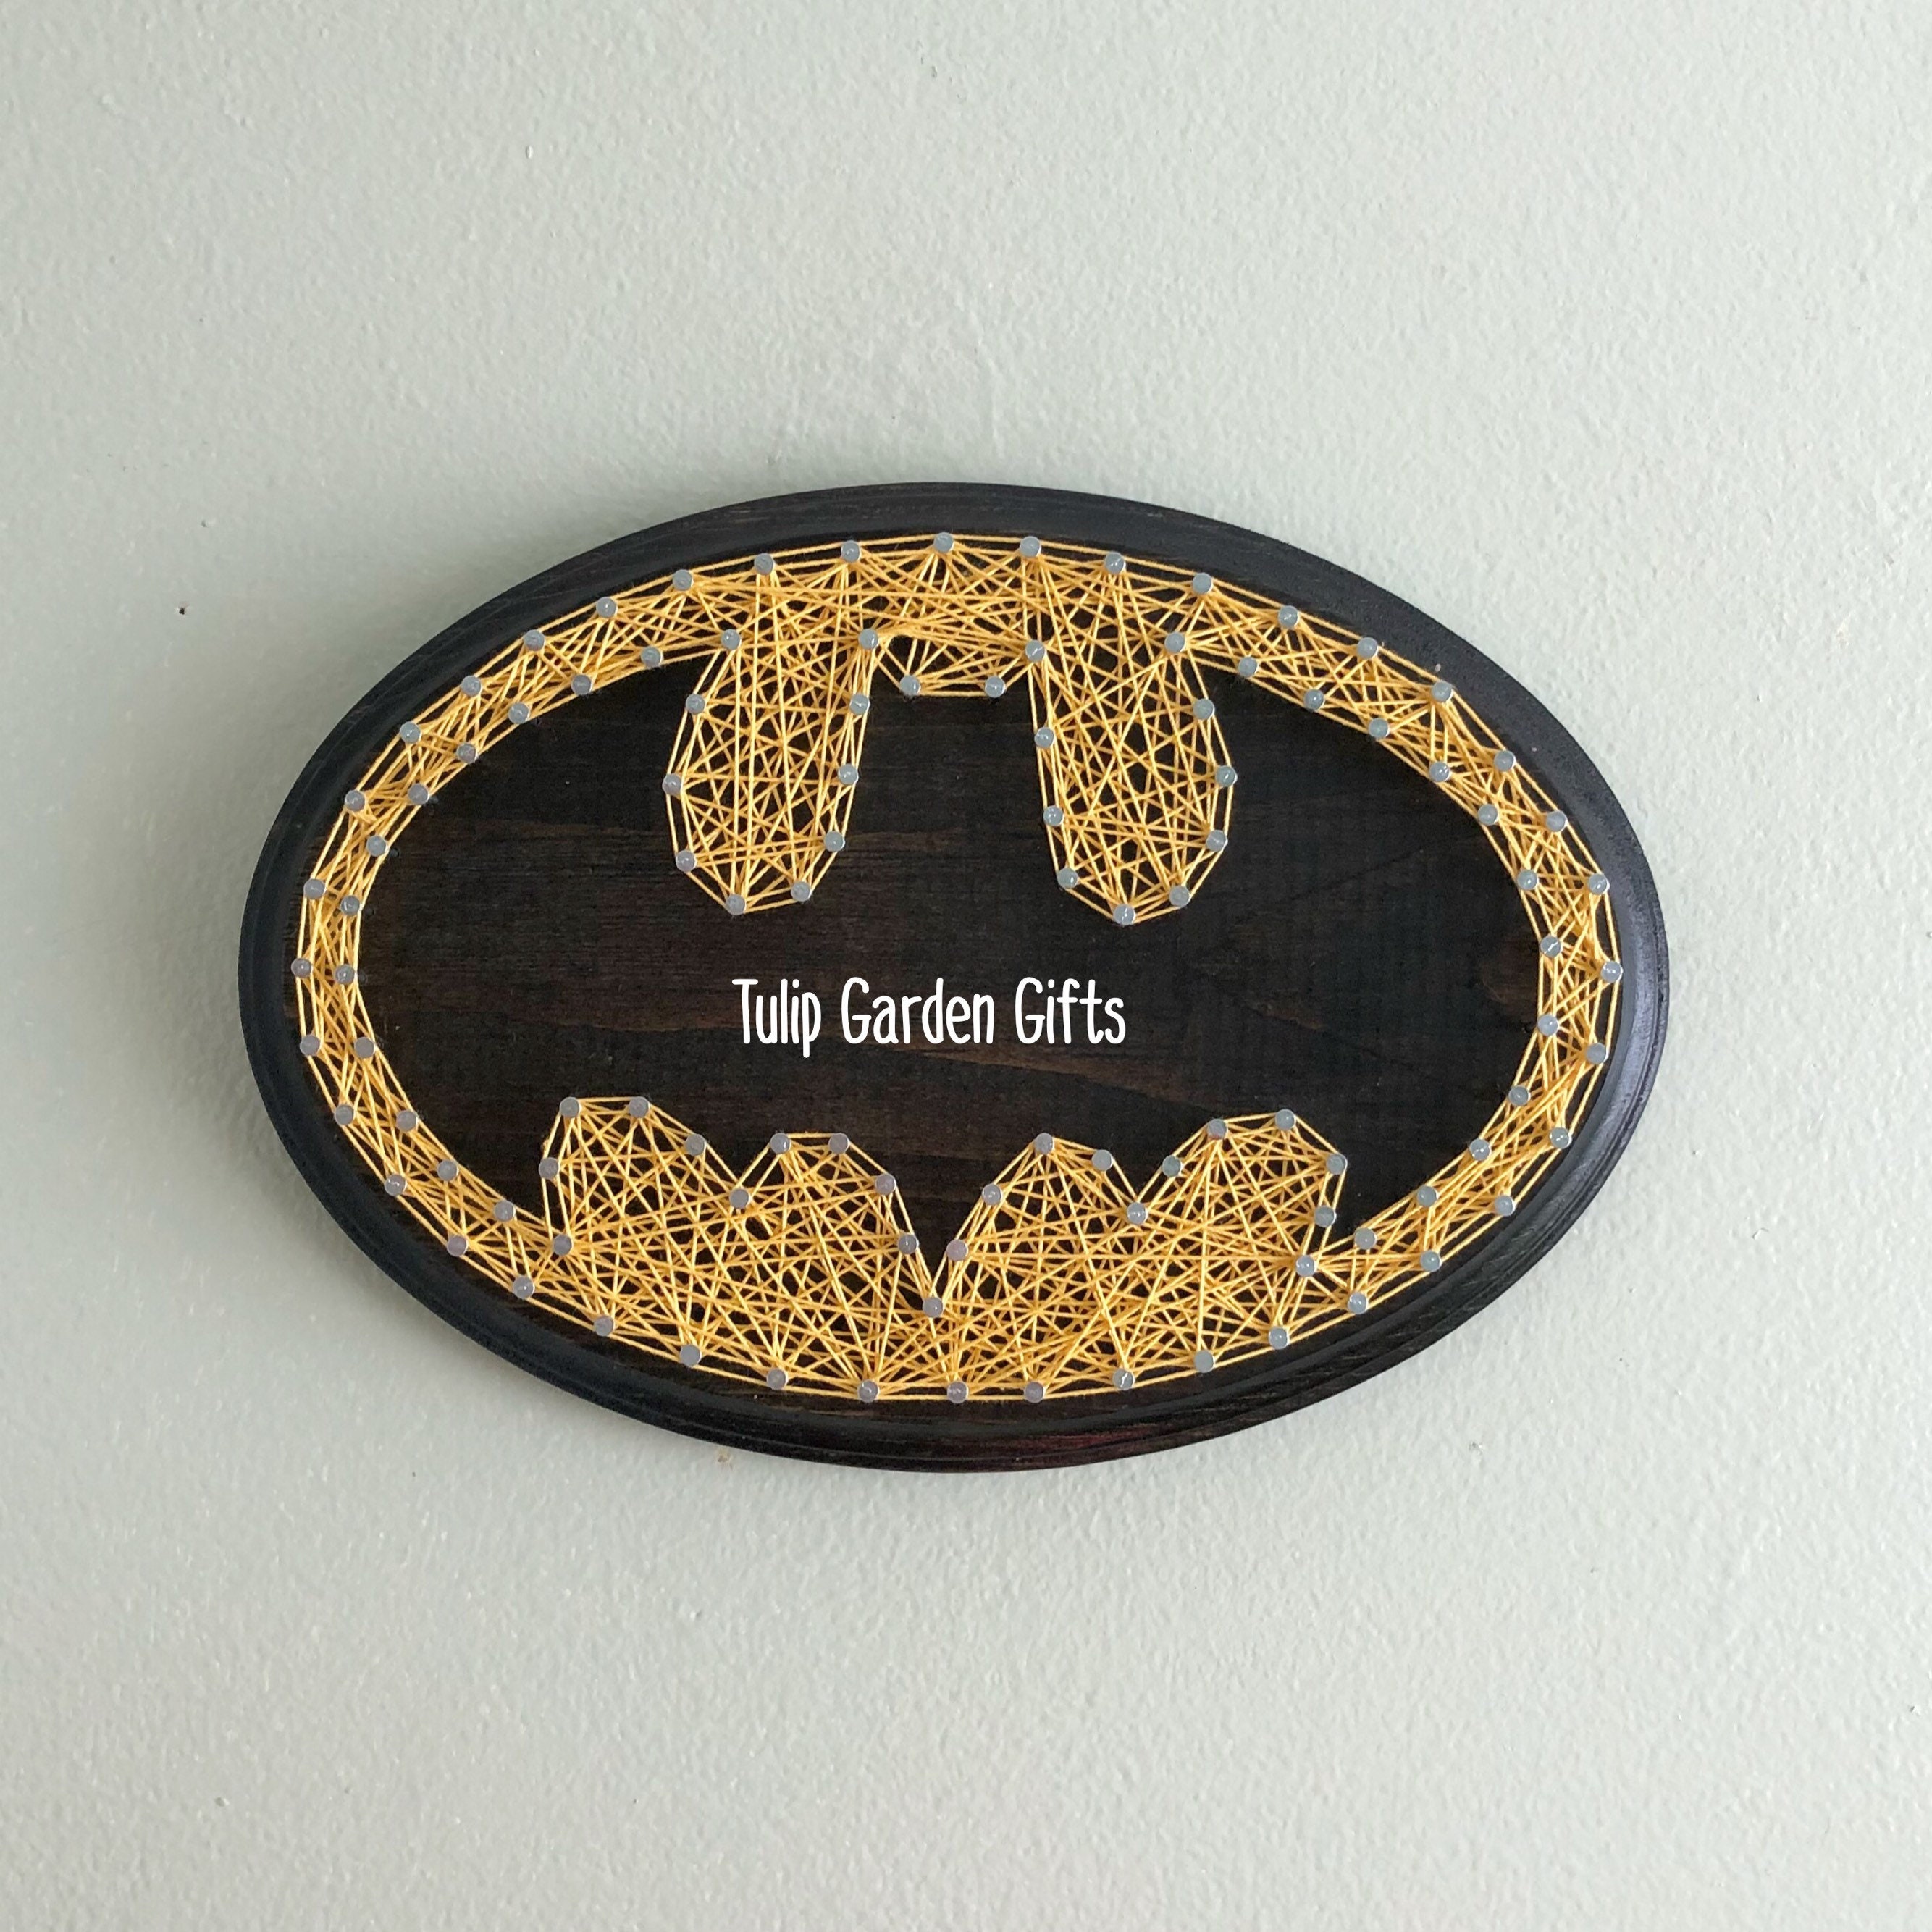 DC+Comics+Batman+Lotion+Soap+Dispenser+Bat+Logo for sale online